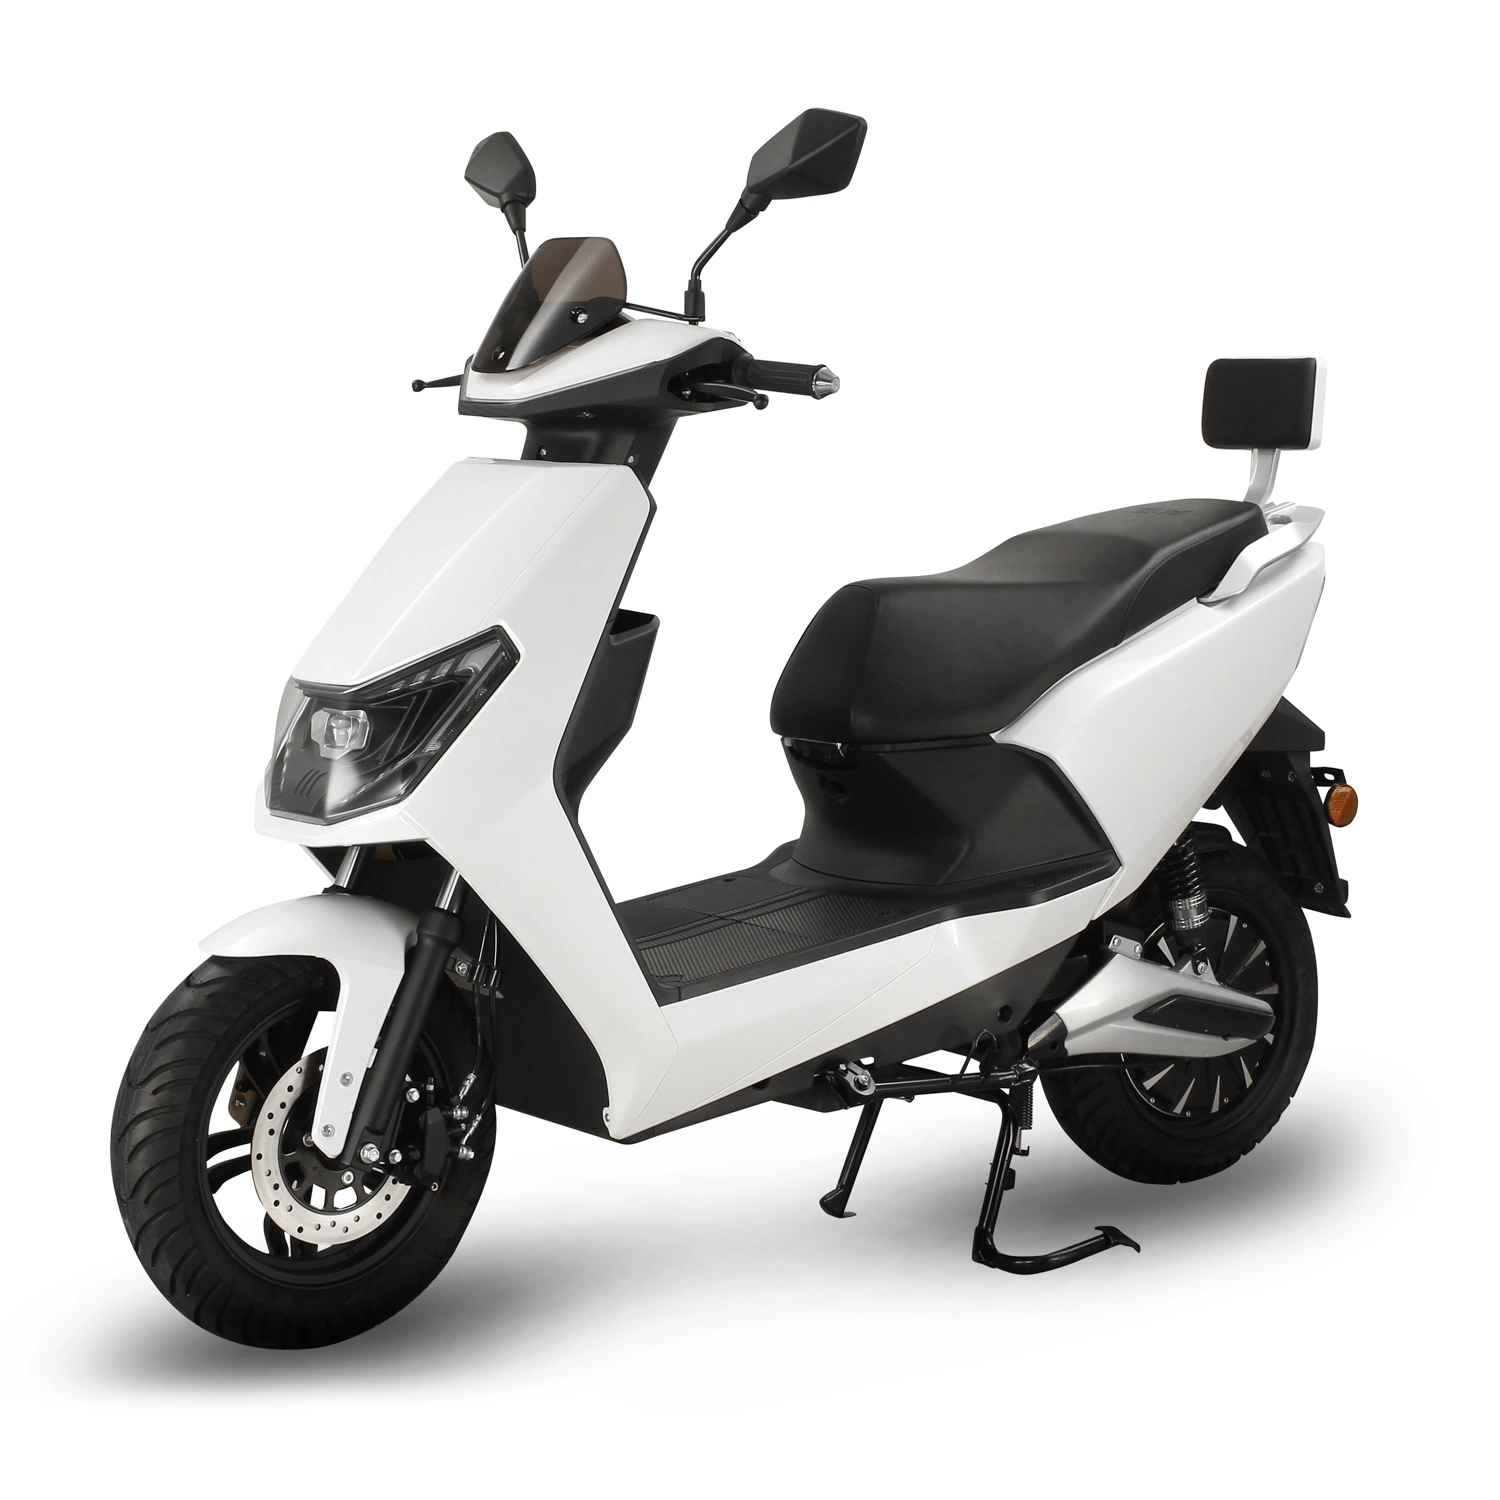 Vente chaude de motos pour adultes à Miami, scooters électriques de location et vélos électriques.